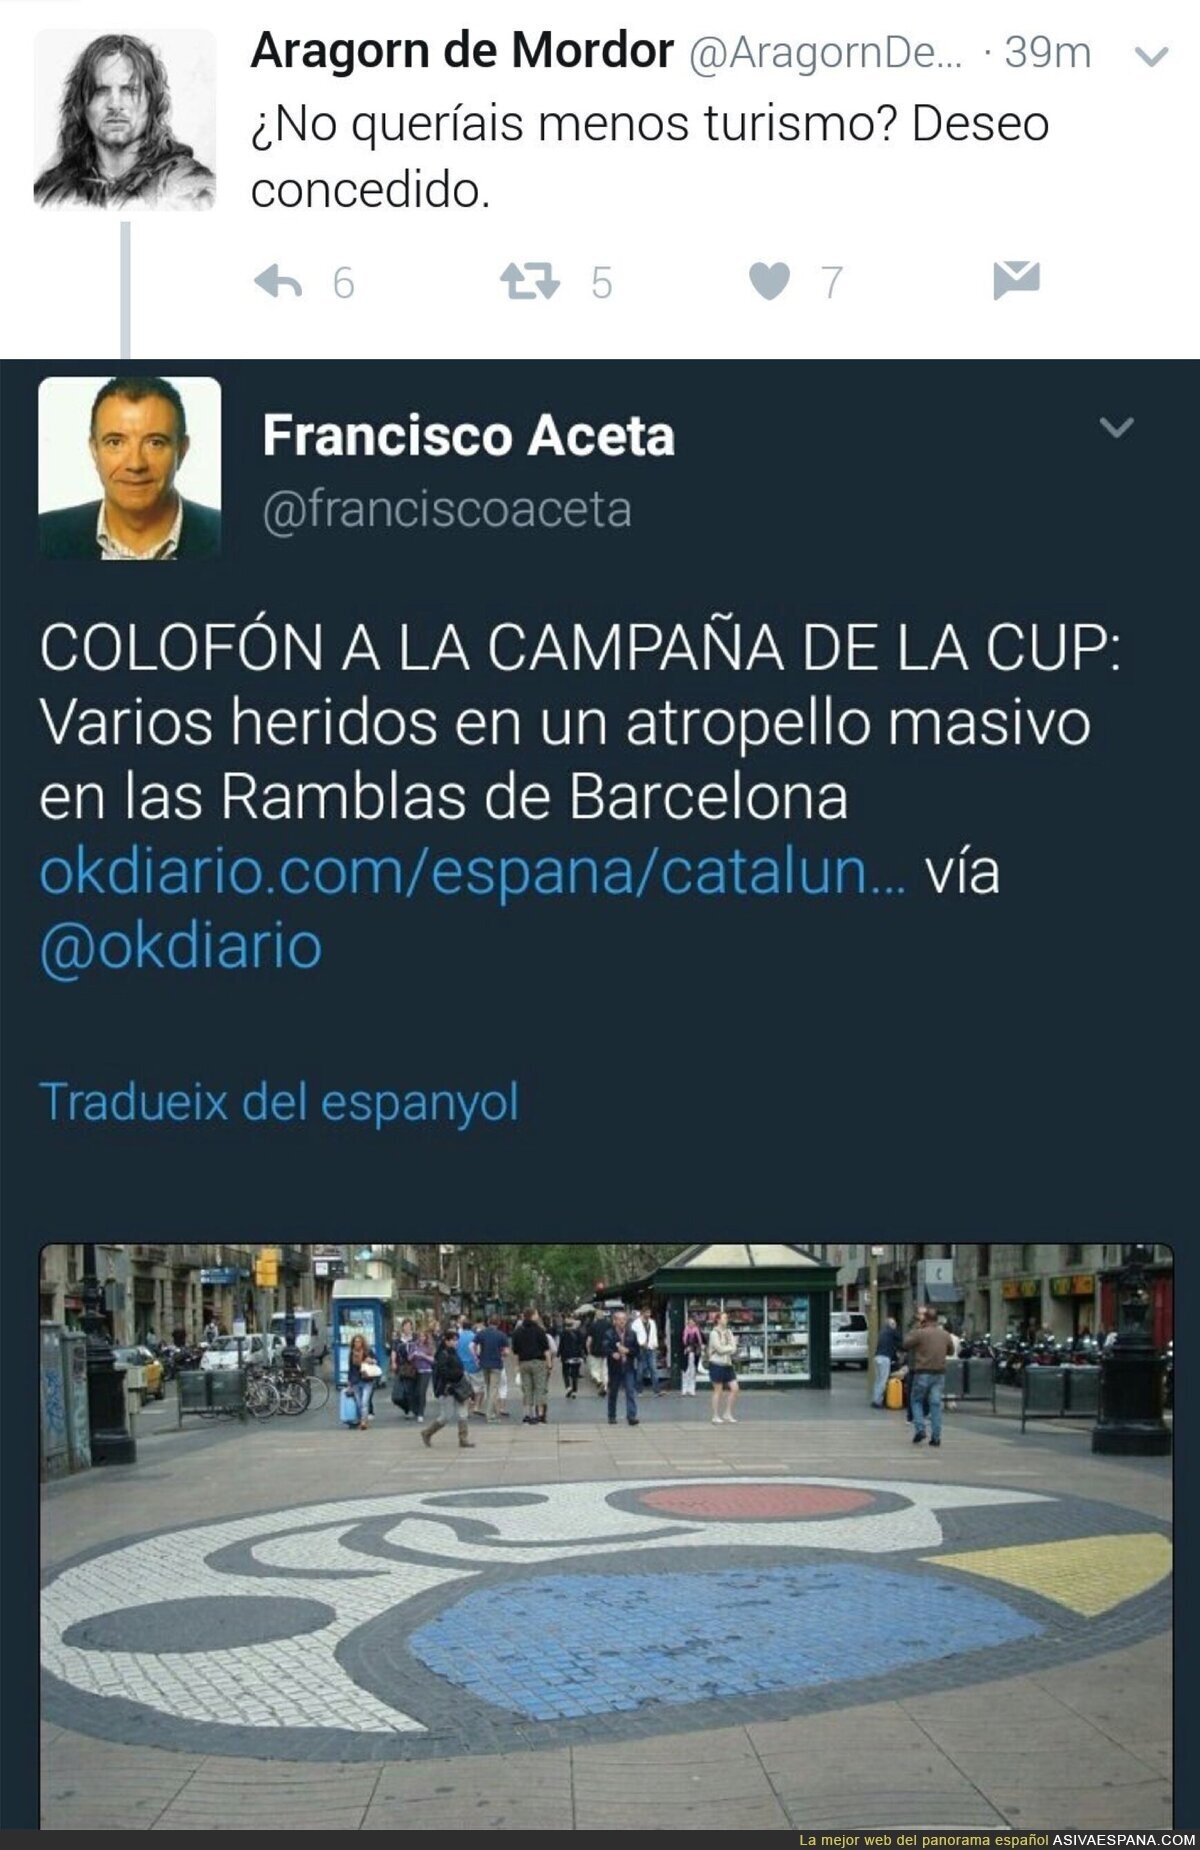 El odio anticatalanista en estos dos tuits tras el atentado terrorista en Barcelona